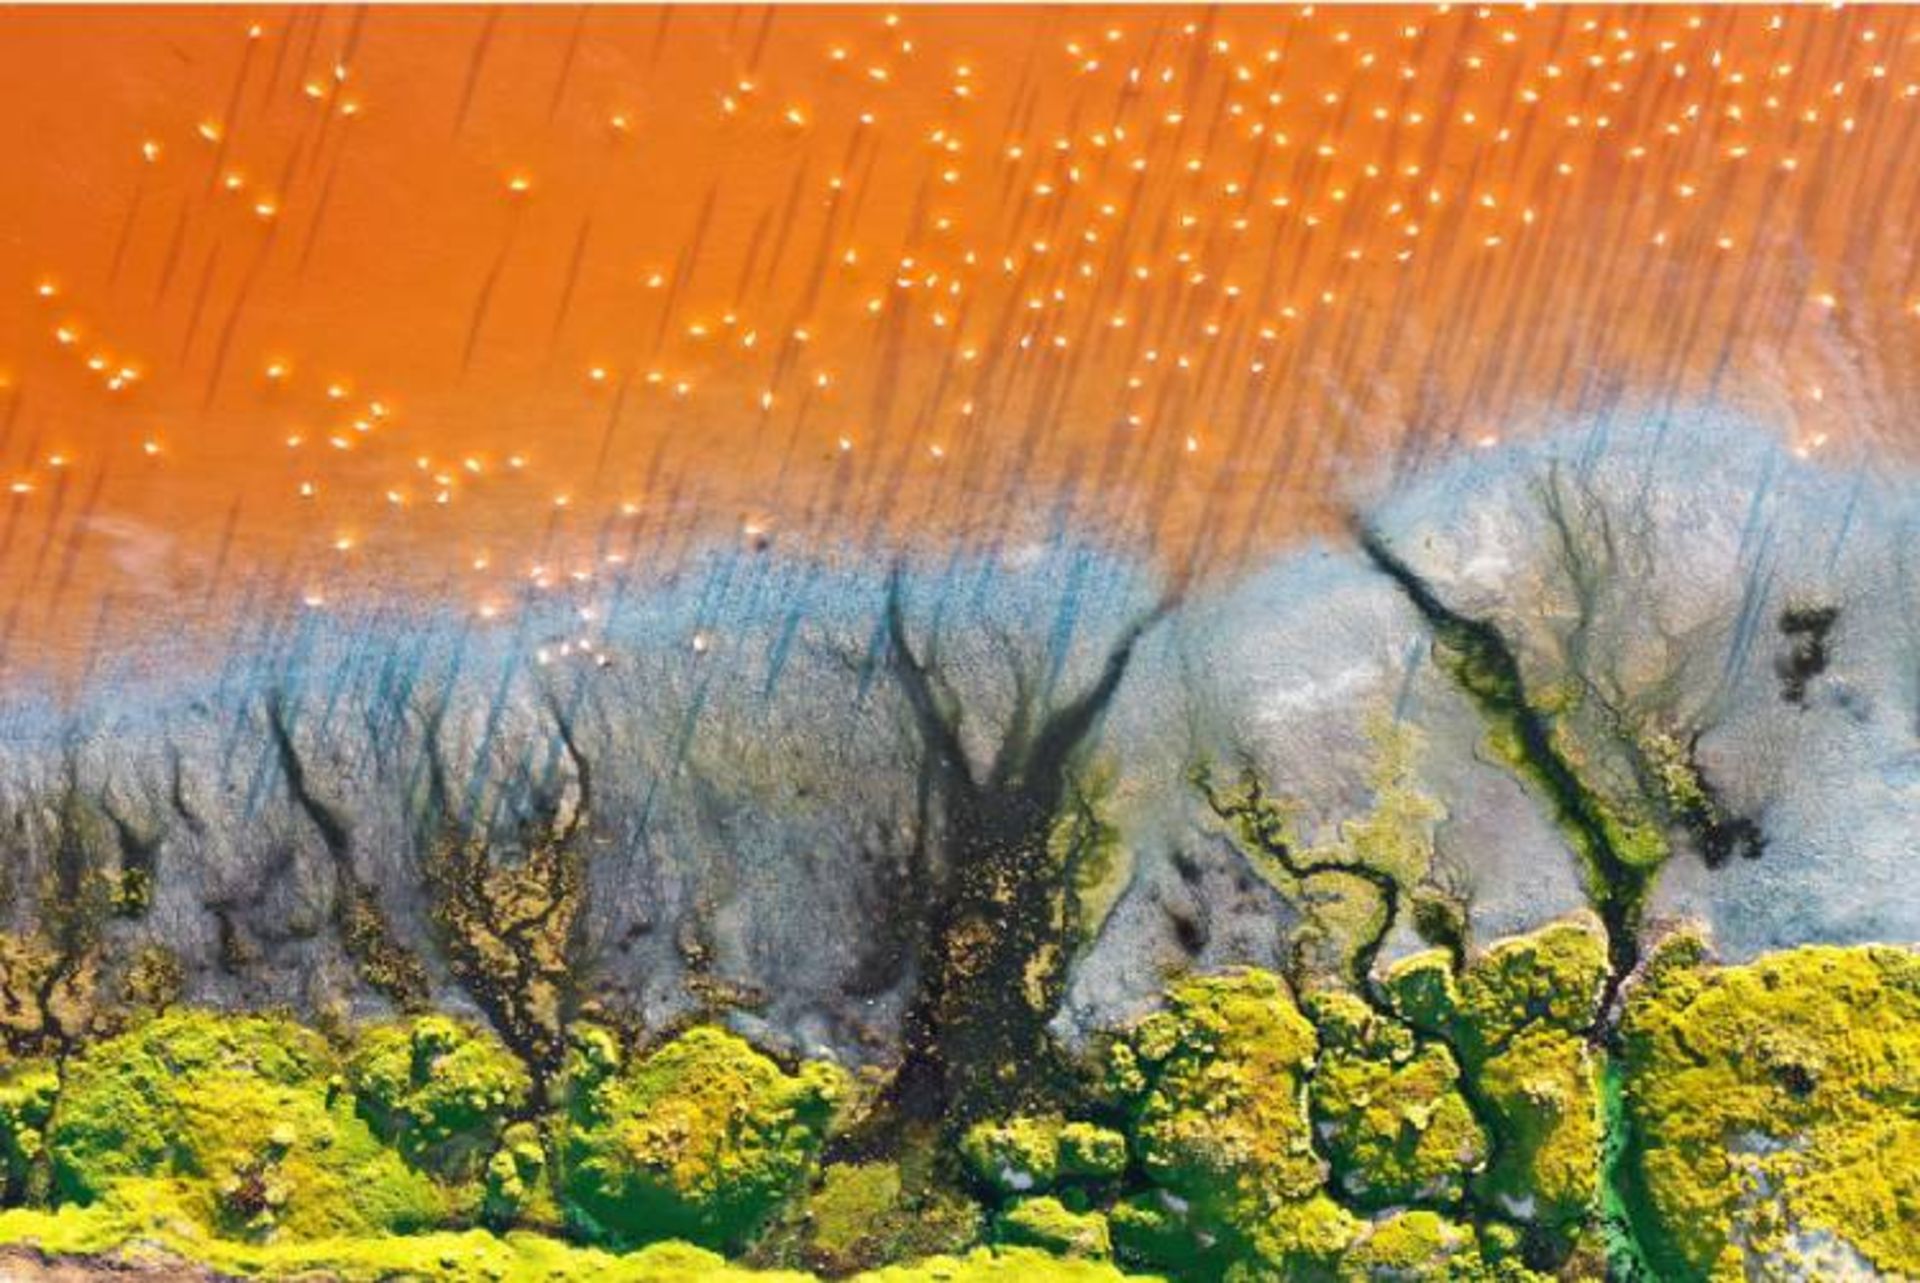 مرجع متخصصين ايران عكس فيناليست مسابقه bigpicture بخش «هنر طبيعت»: «درياچه رنگ‌ها»؛ عكاس: جس استاكهاوس